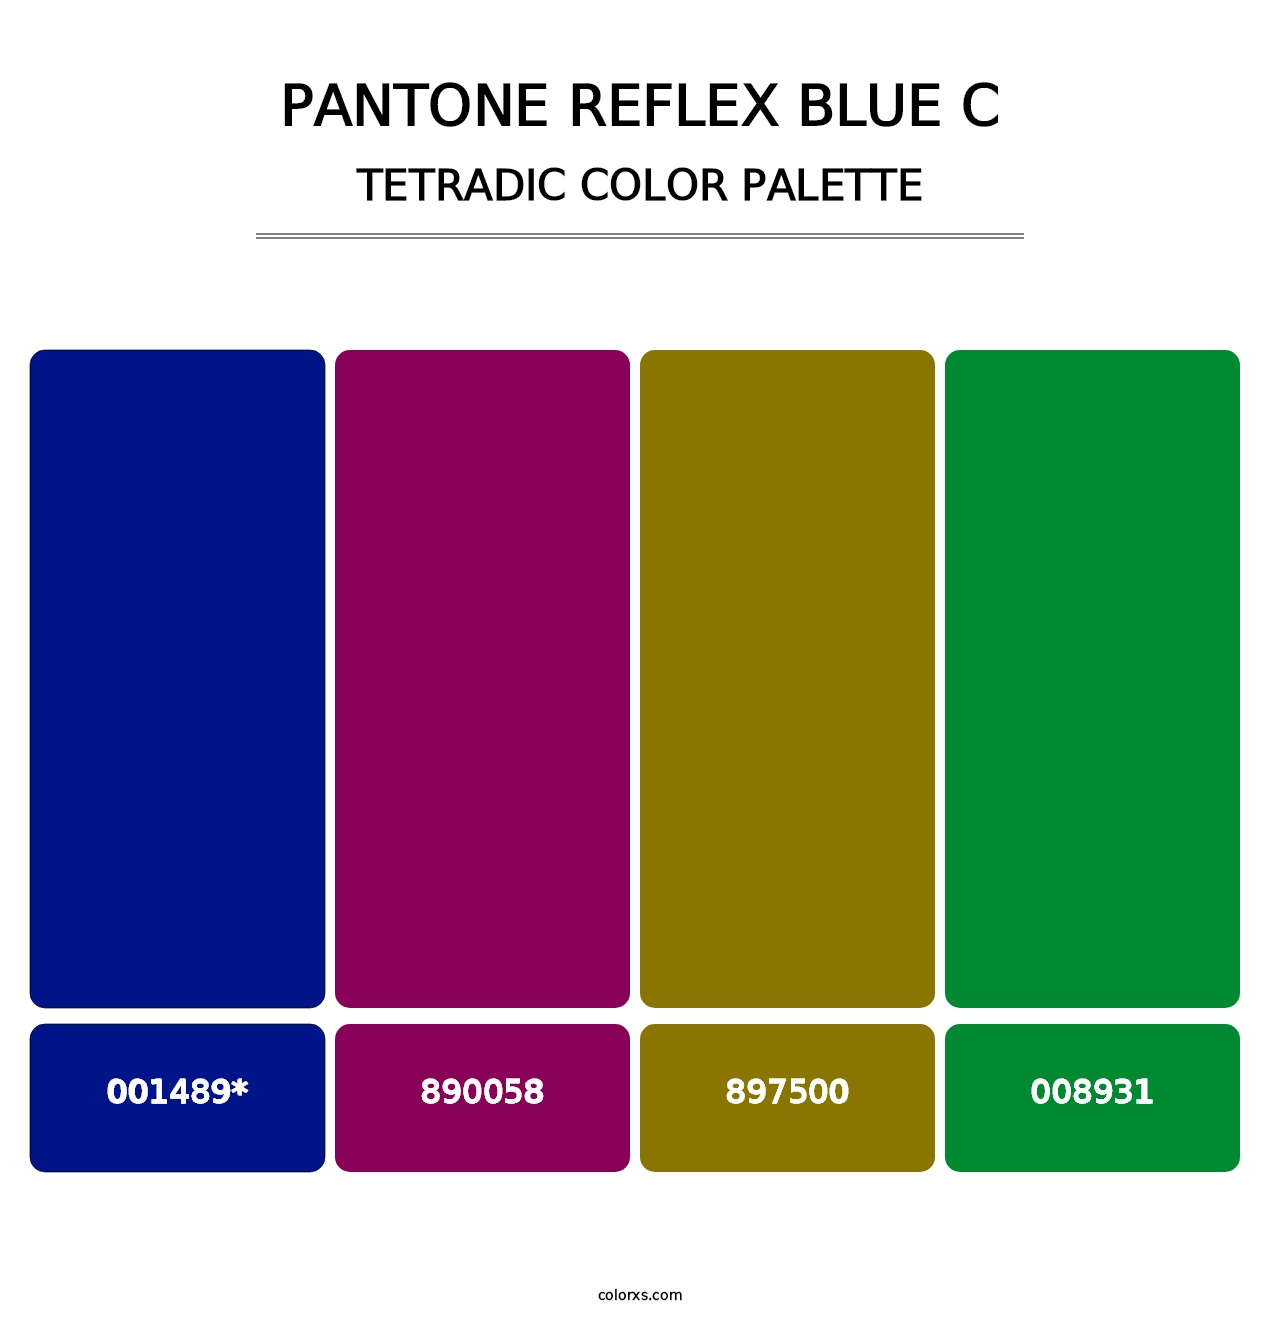 PANTONE Reflex Blue C - Tetradic Color Palette